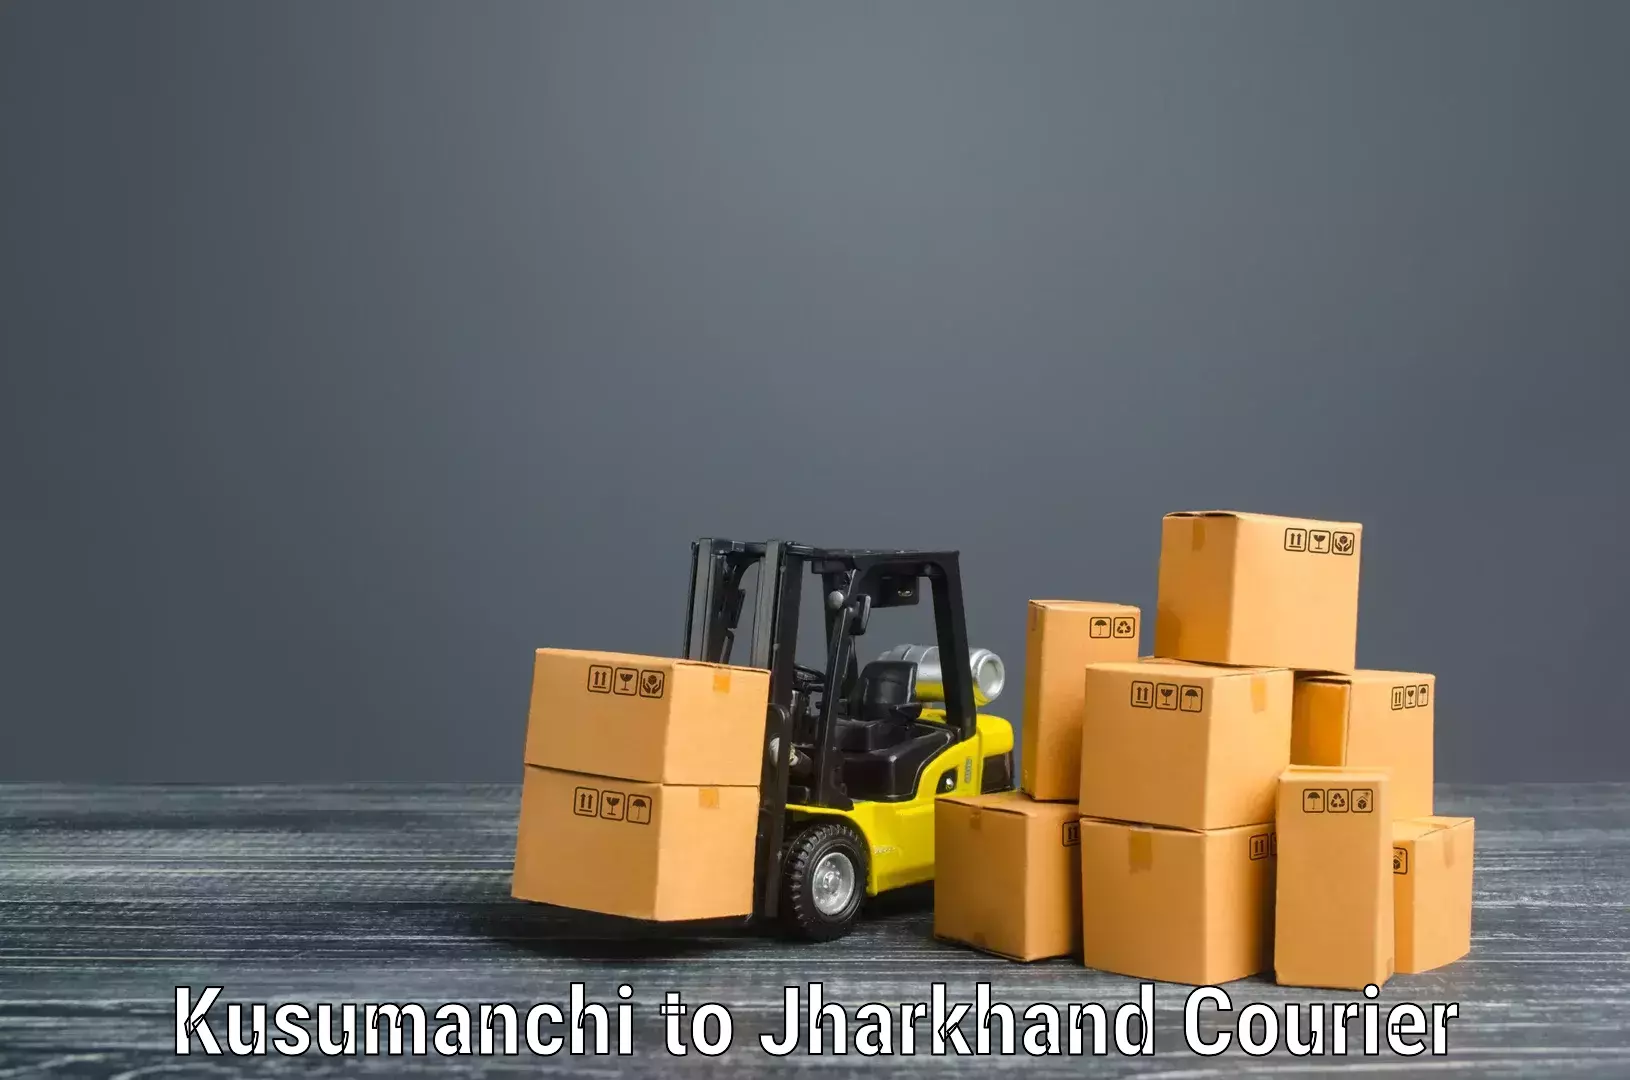 Furniture transport experts Kusumanchi to Jagannathpur